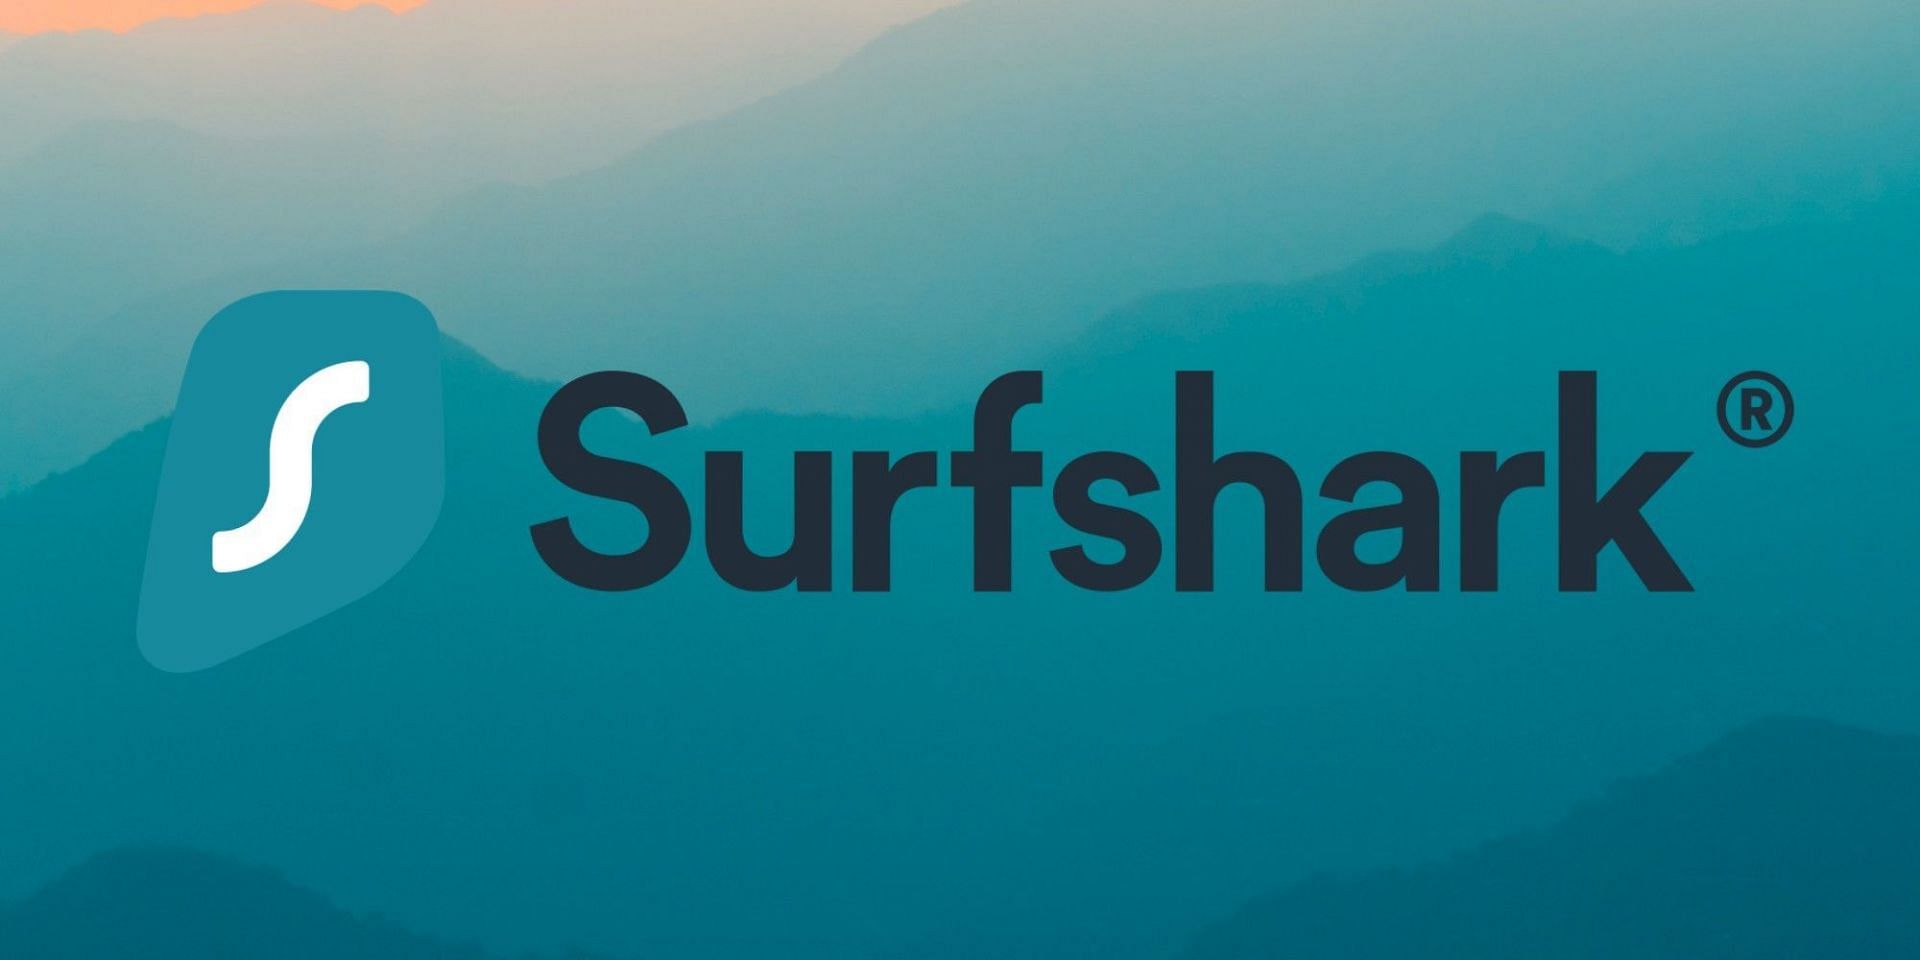 Surfshark (Image via Surfshark)